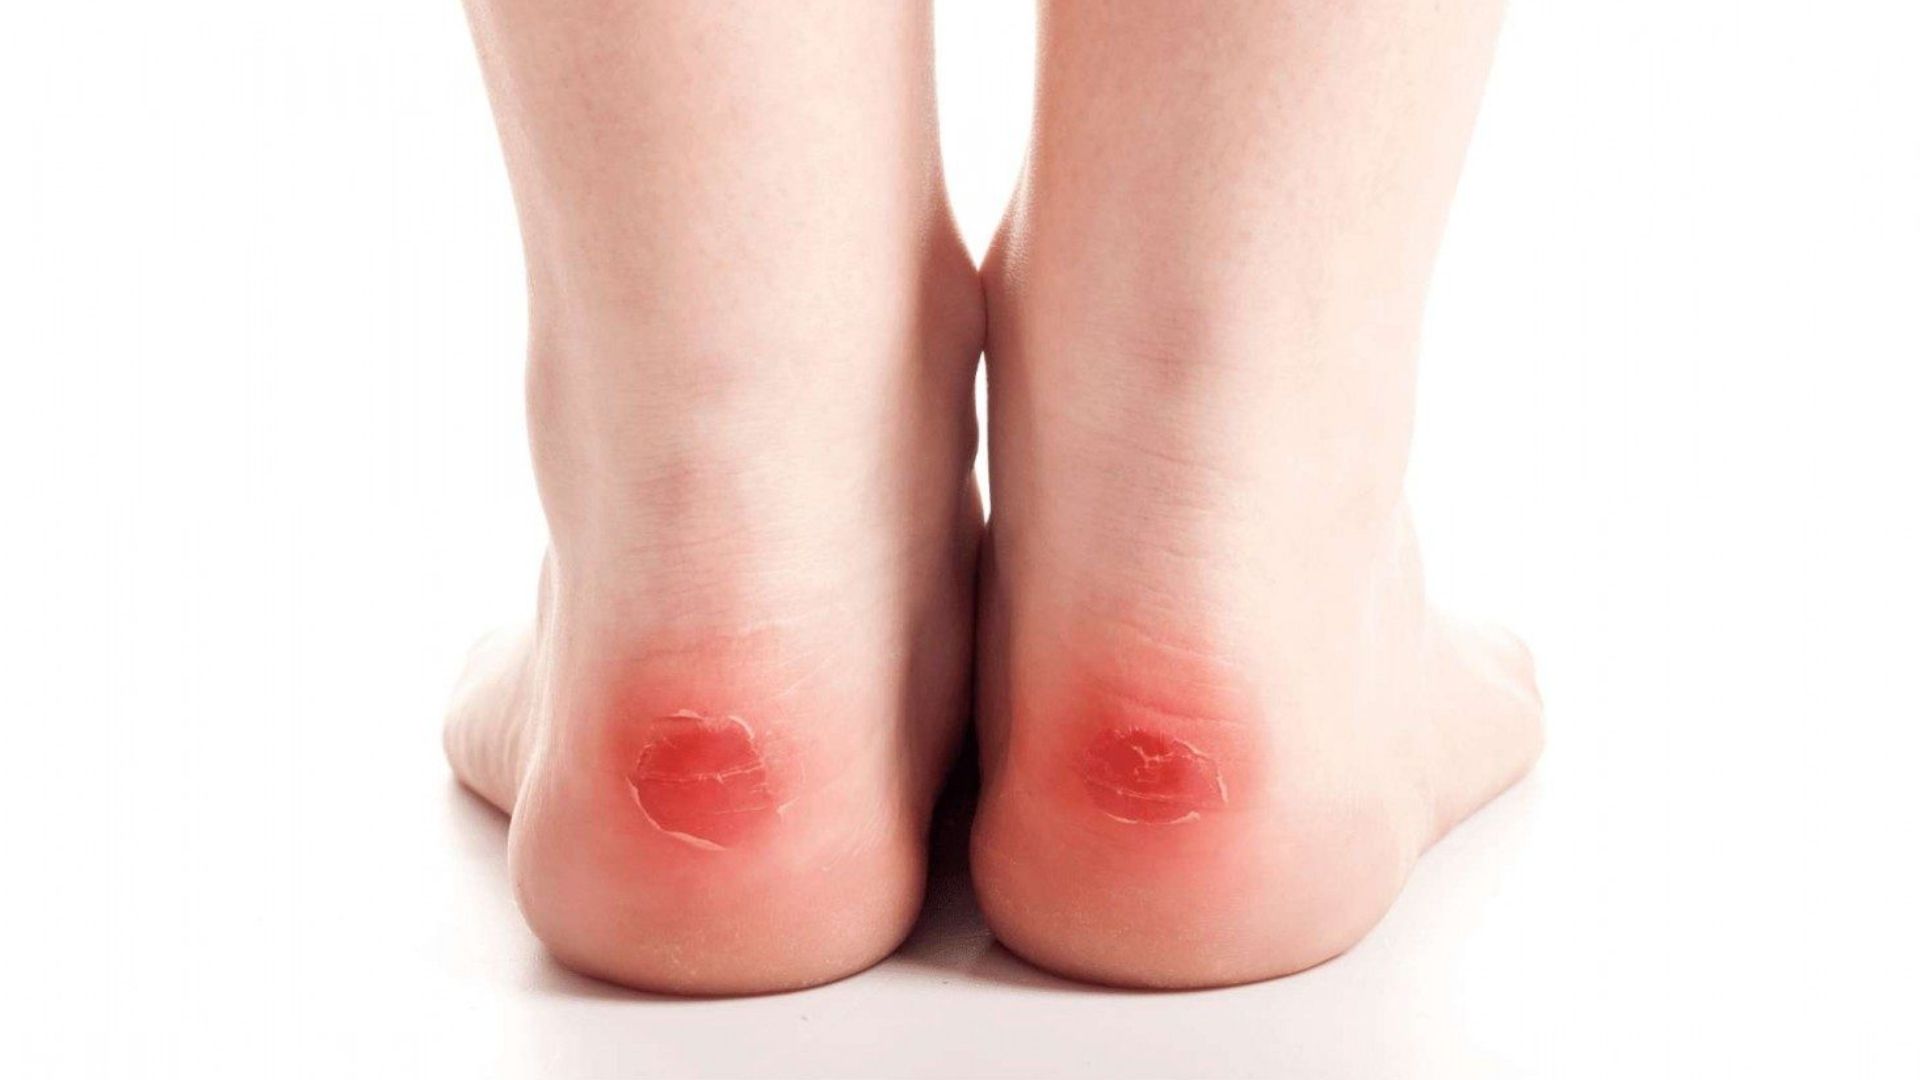 Reddish Skin Colour Of Back Side Of Feet